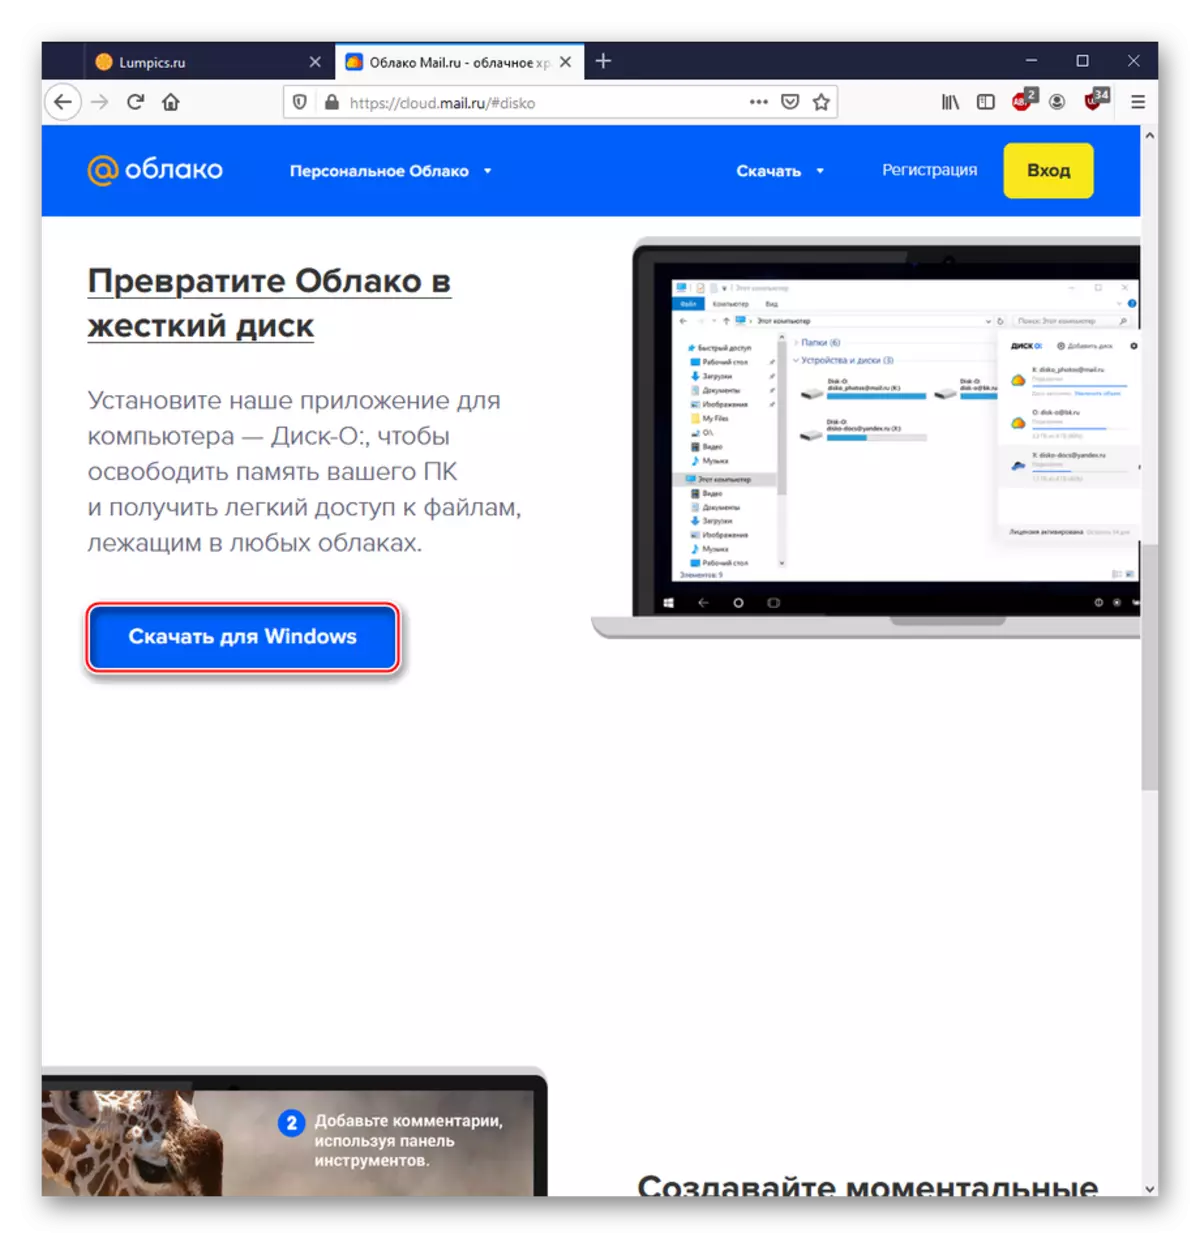 下載PC程序與服務cloud@mail.ru工作